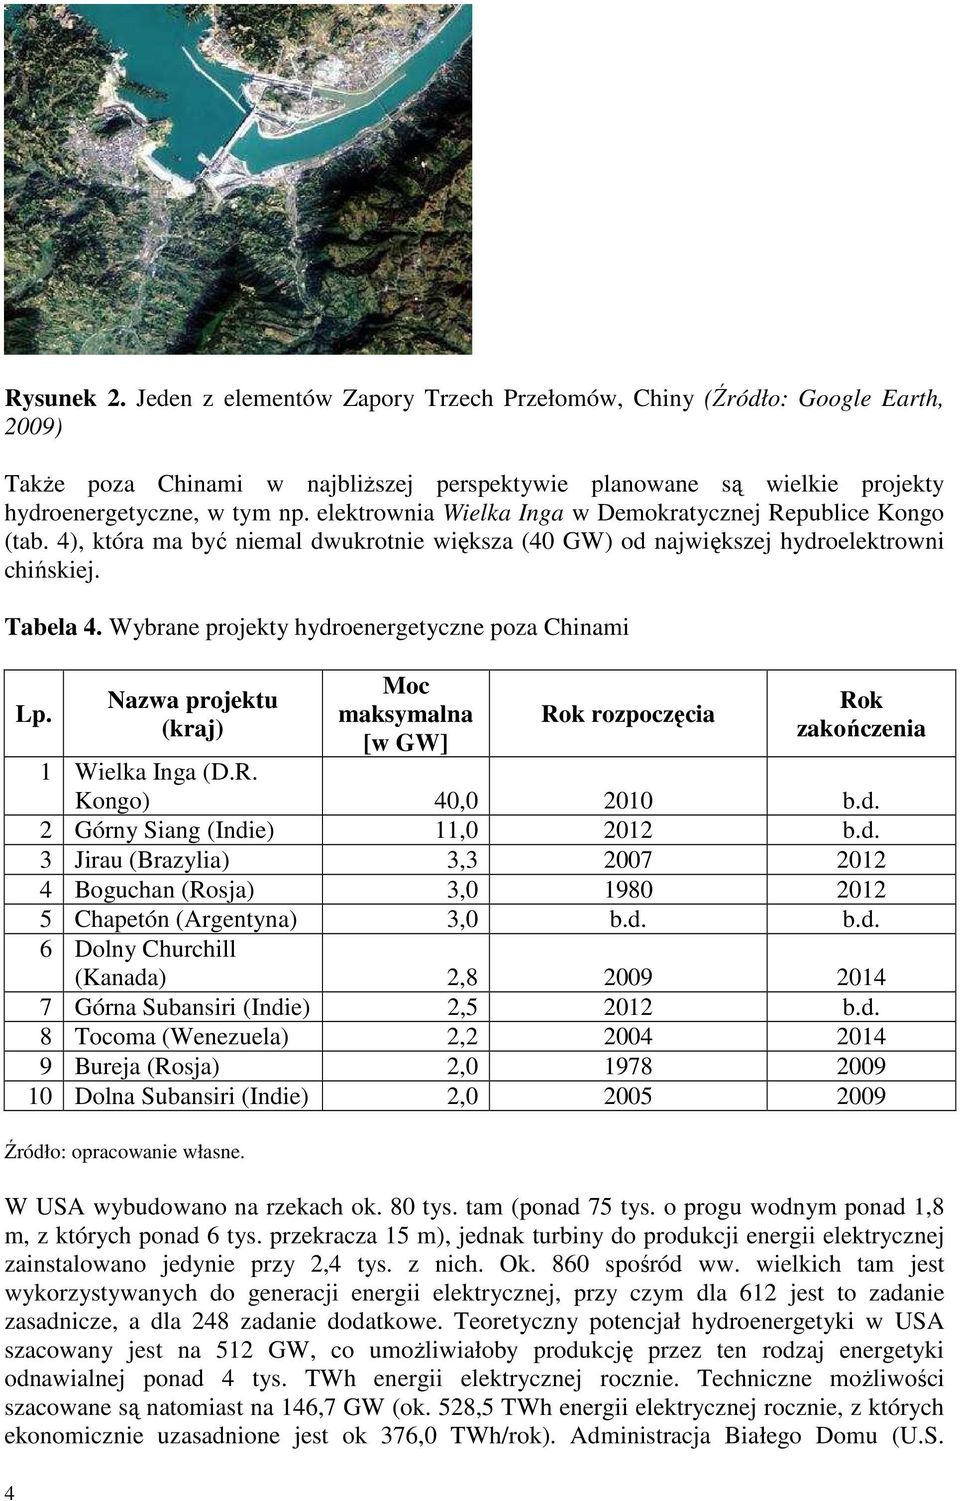 Wybrane projekty hydroenergetyczne poza Chinami 4 Lp. Nazwa projektu (kraj) Moc maksymalna [w GW] Rok rozpoczęcia Rok zakończenia 1 Wielka Inga (D.R. Kongo) 40,0 2010 b.d. 2 Górny Siang (Indie) 11,0 2012 b.